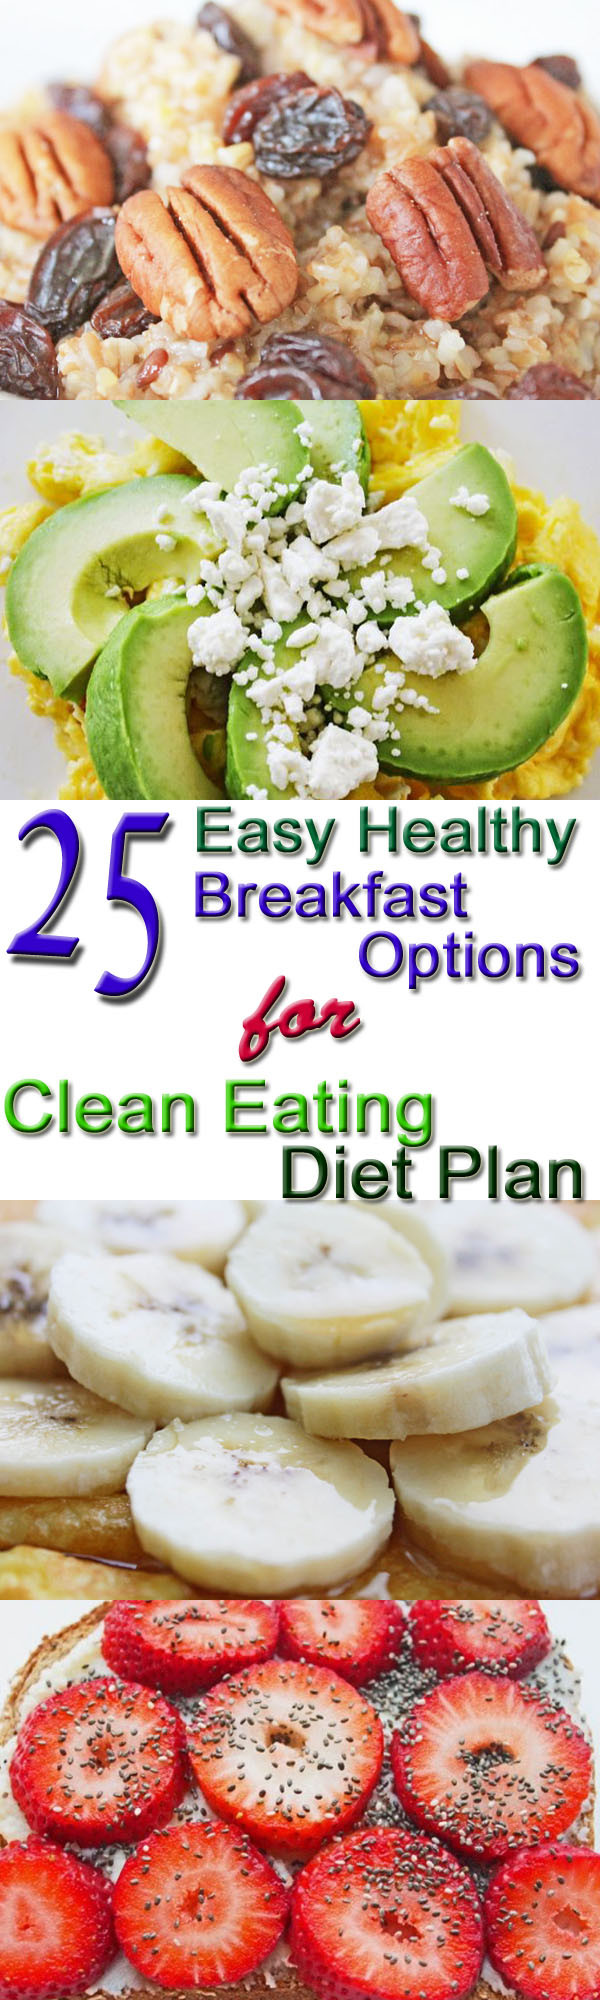 Healthy Breakfast Options
 25 Healthy Breakfast Options